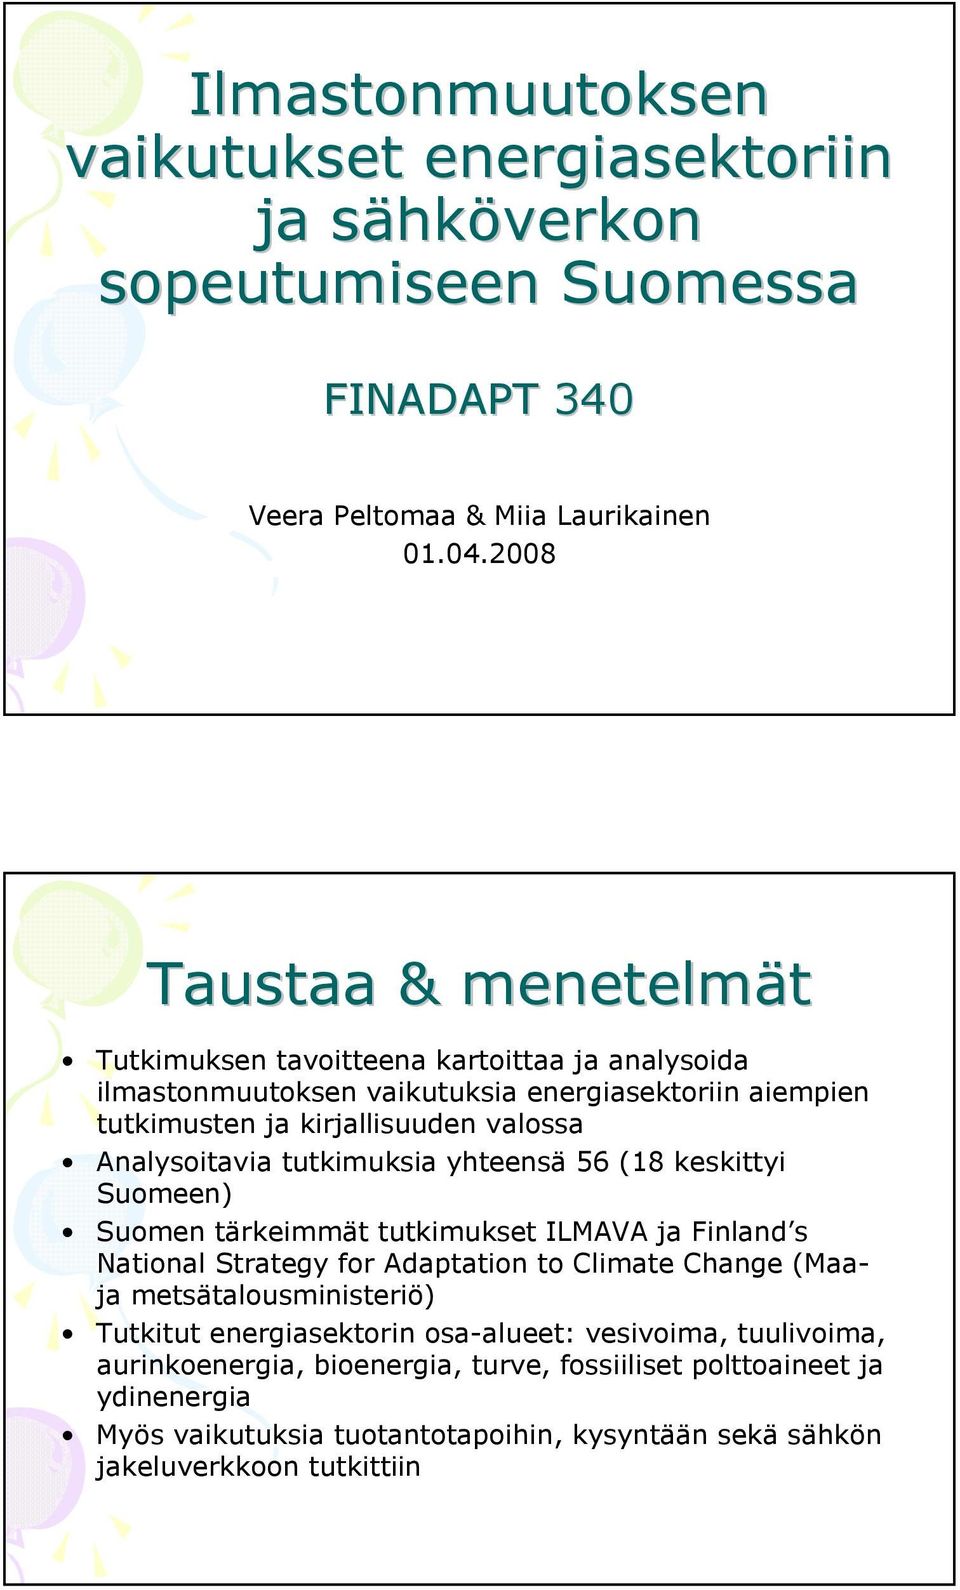 Analysoitavia tutkimuksia yhteensä 56 (18 keskittyi Suomeen) Suomen tärkeimmät tutkimukset ILMAVA ja Finland s National Strategy for Adaptation to Climate Change (Maaja